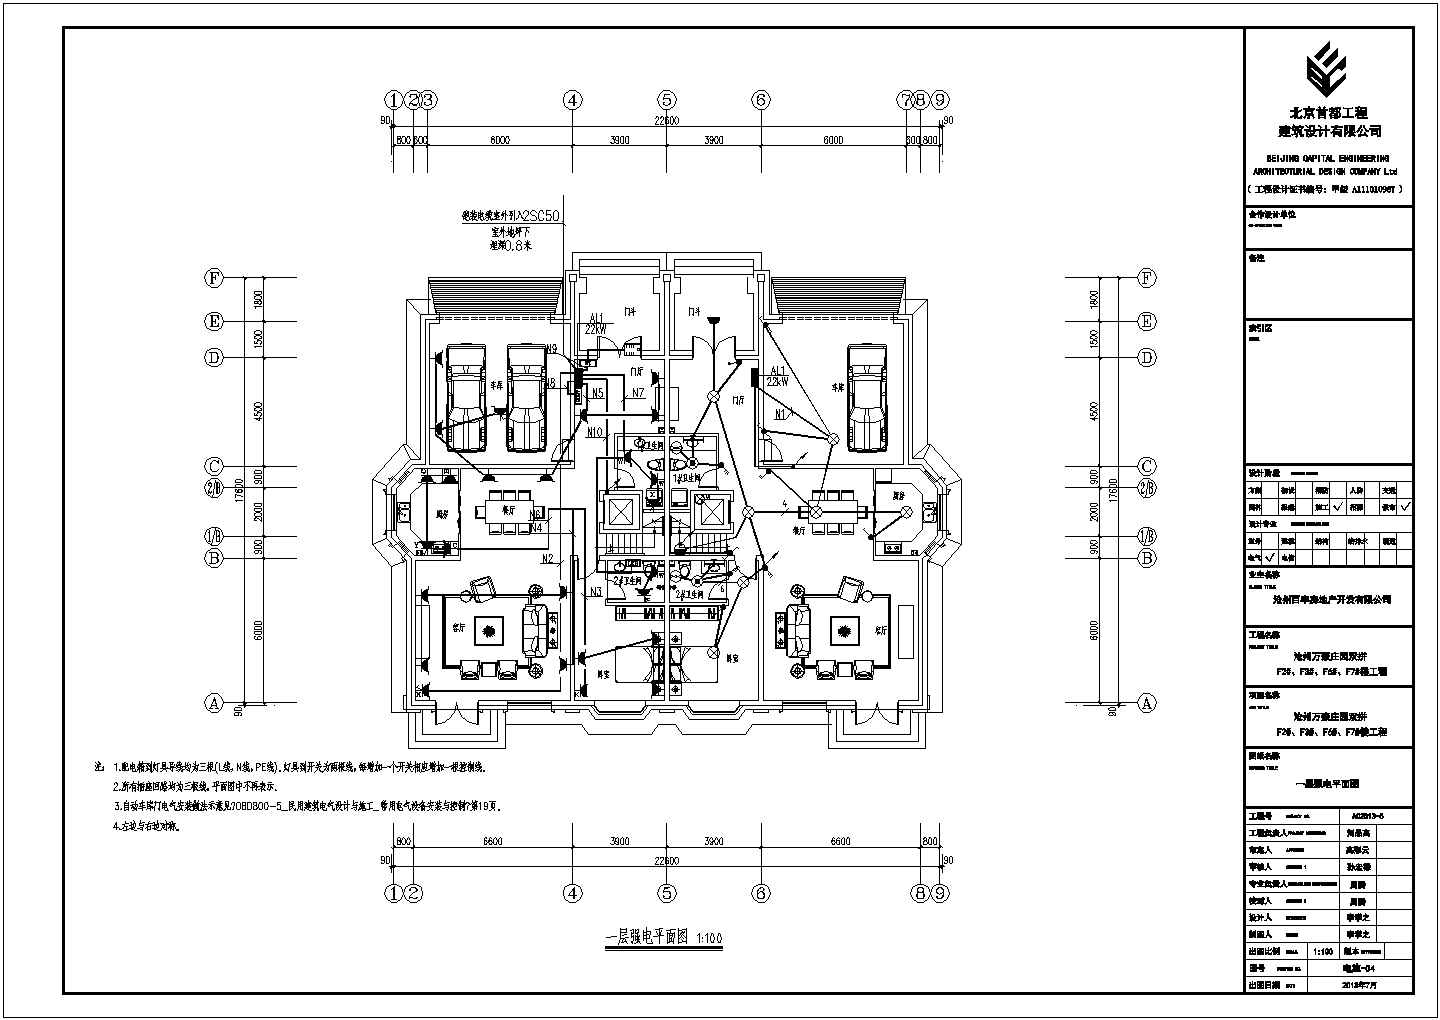 万豪庄园F2#、F3#、F6#、F7#楼工程全套水暖电施工图